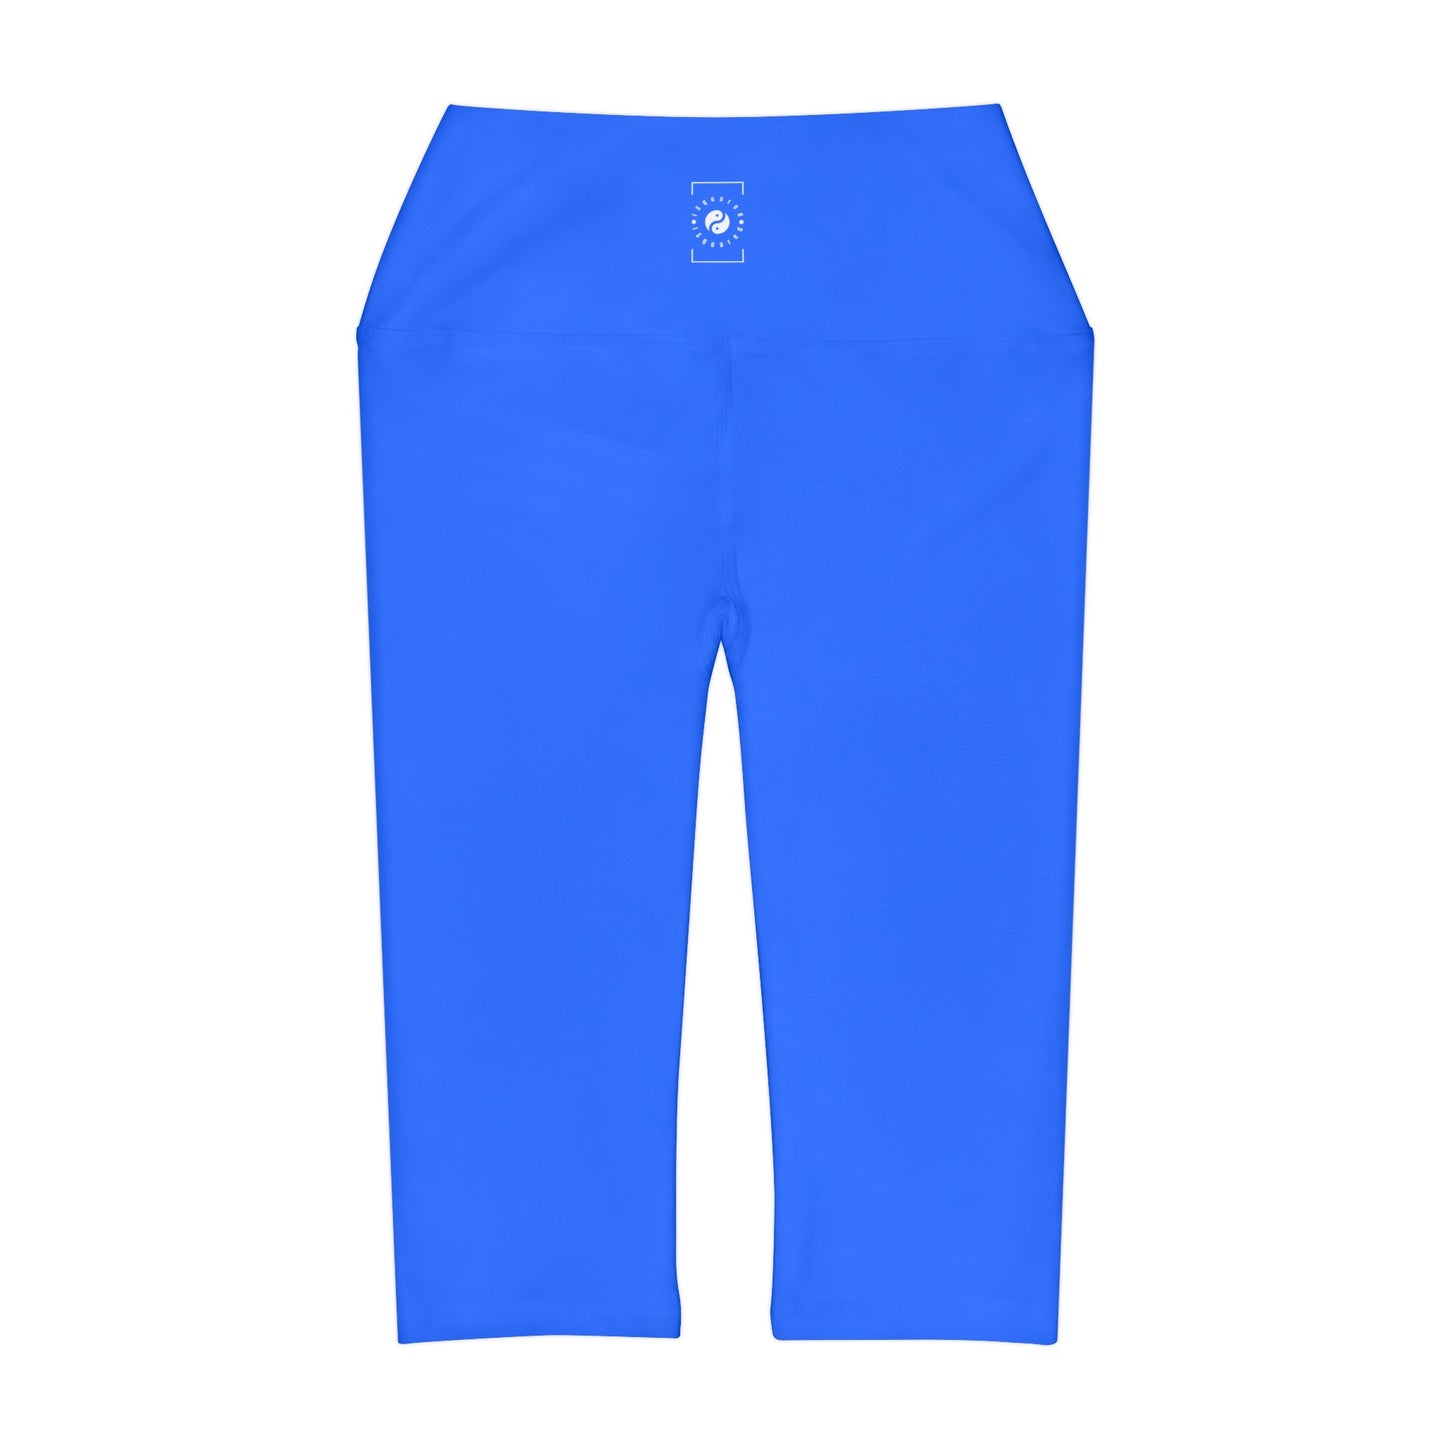 #2C75FF Bleu électrique - Legging Capri taille haute